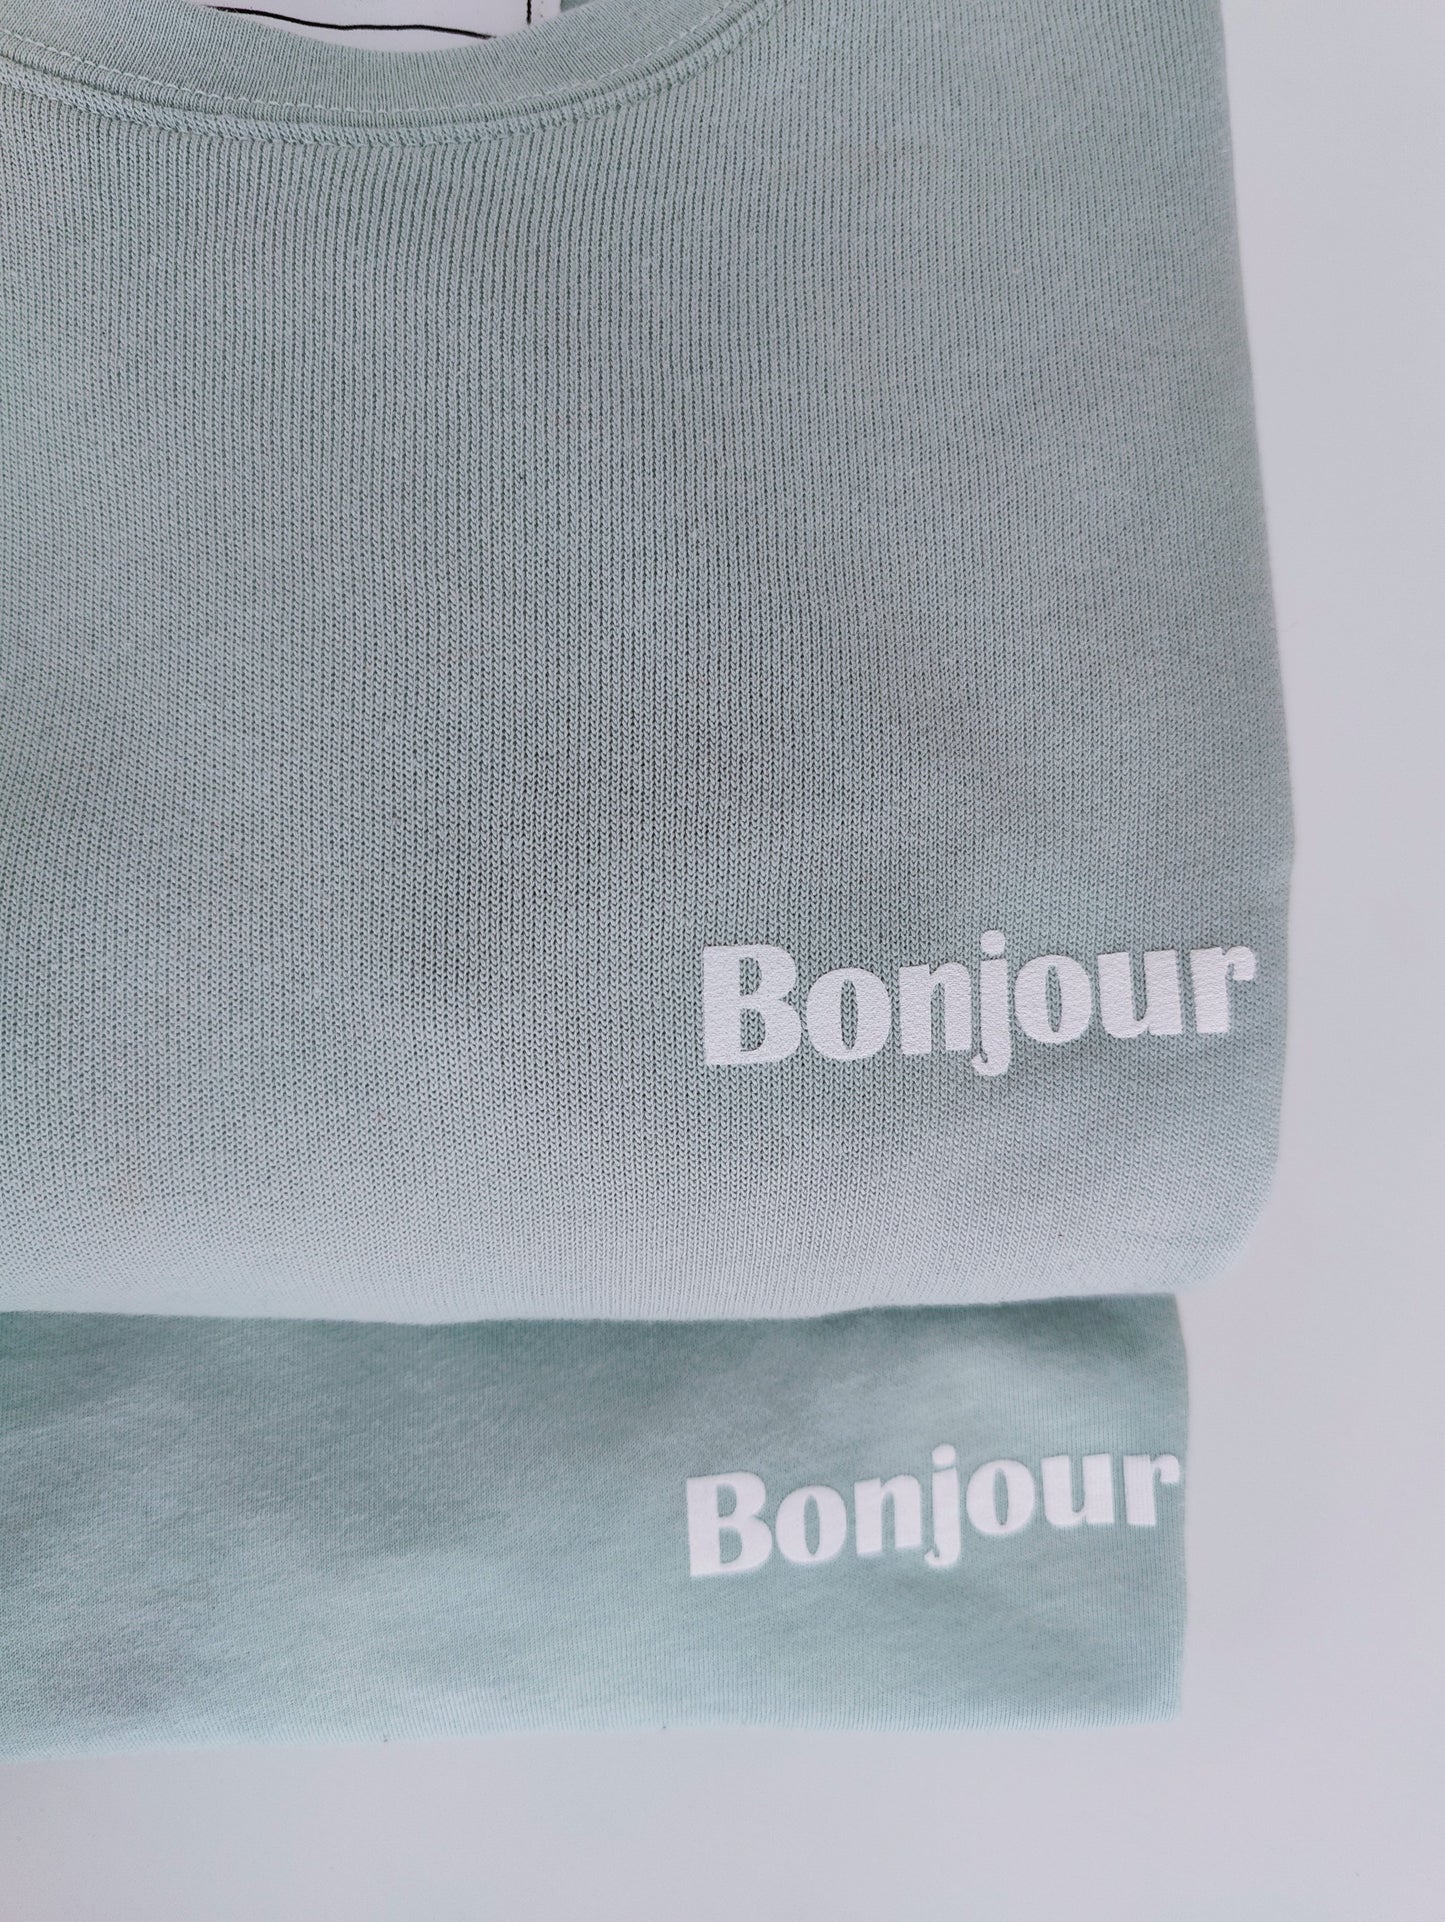 T-shirt Bonjour Wom(men)